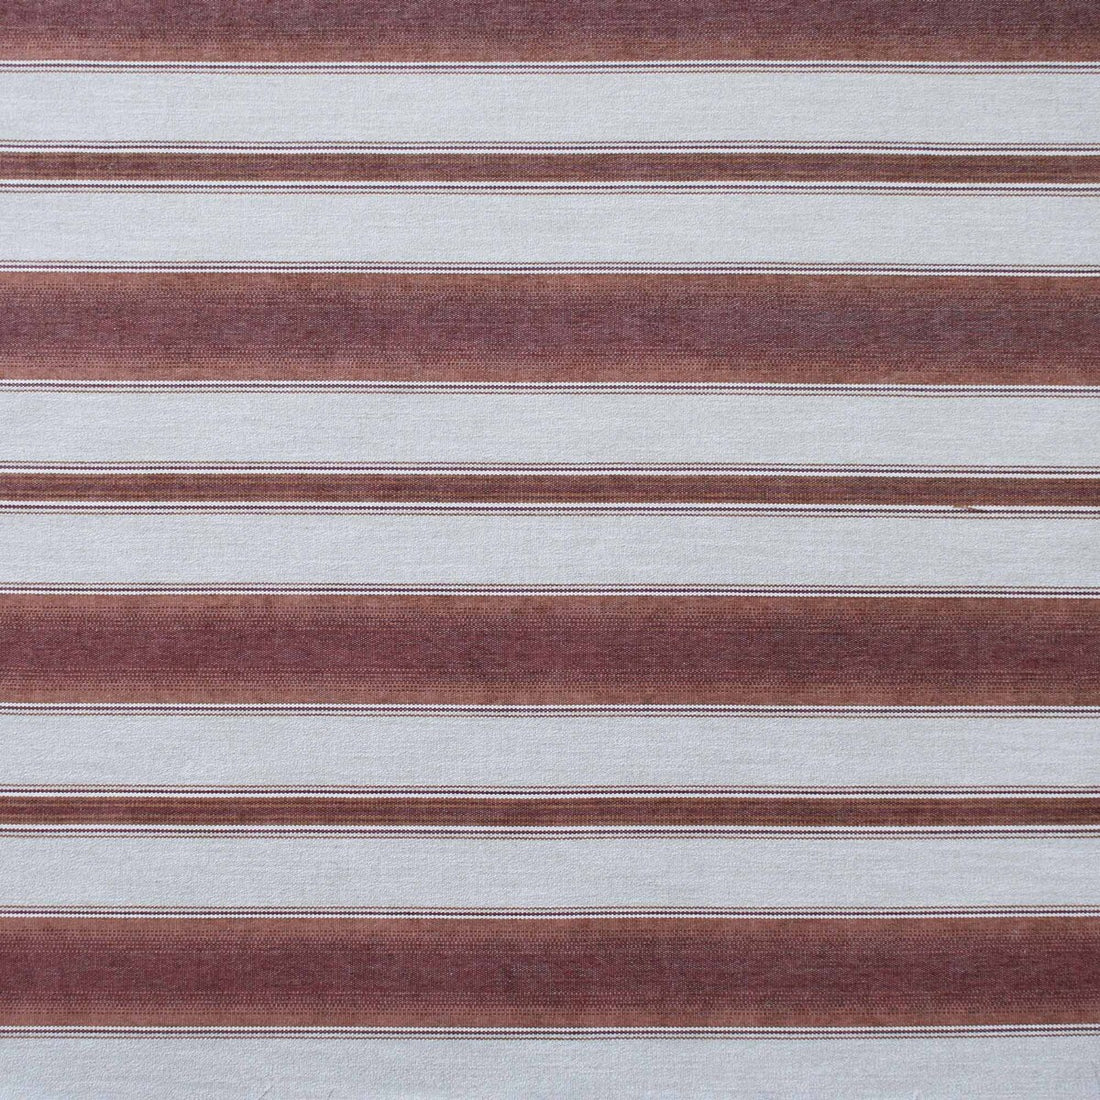 Teodosio fabric in teja color - pattern LCT1125.006.0 - by Gaston y Daniela in the Lorenzo Castillo IX Hesperia collection